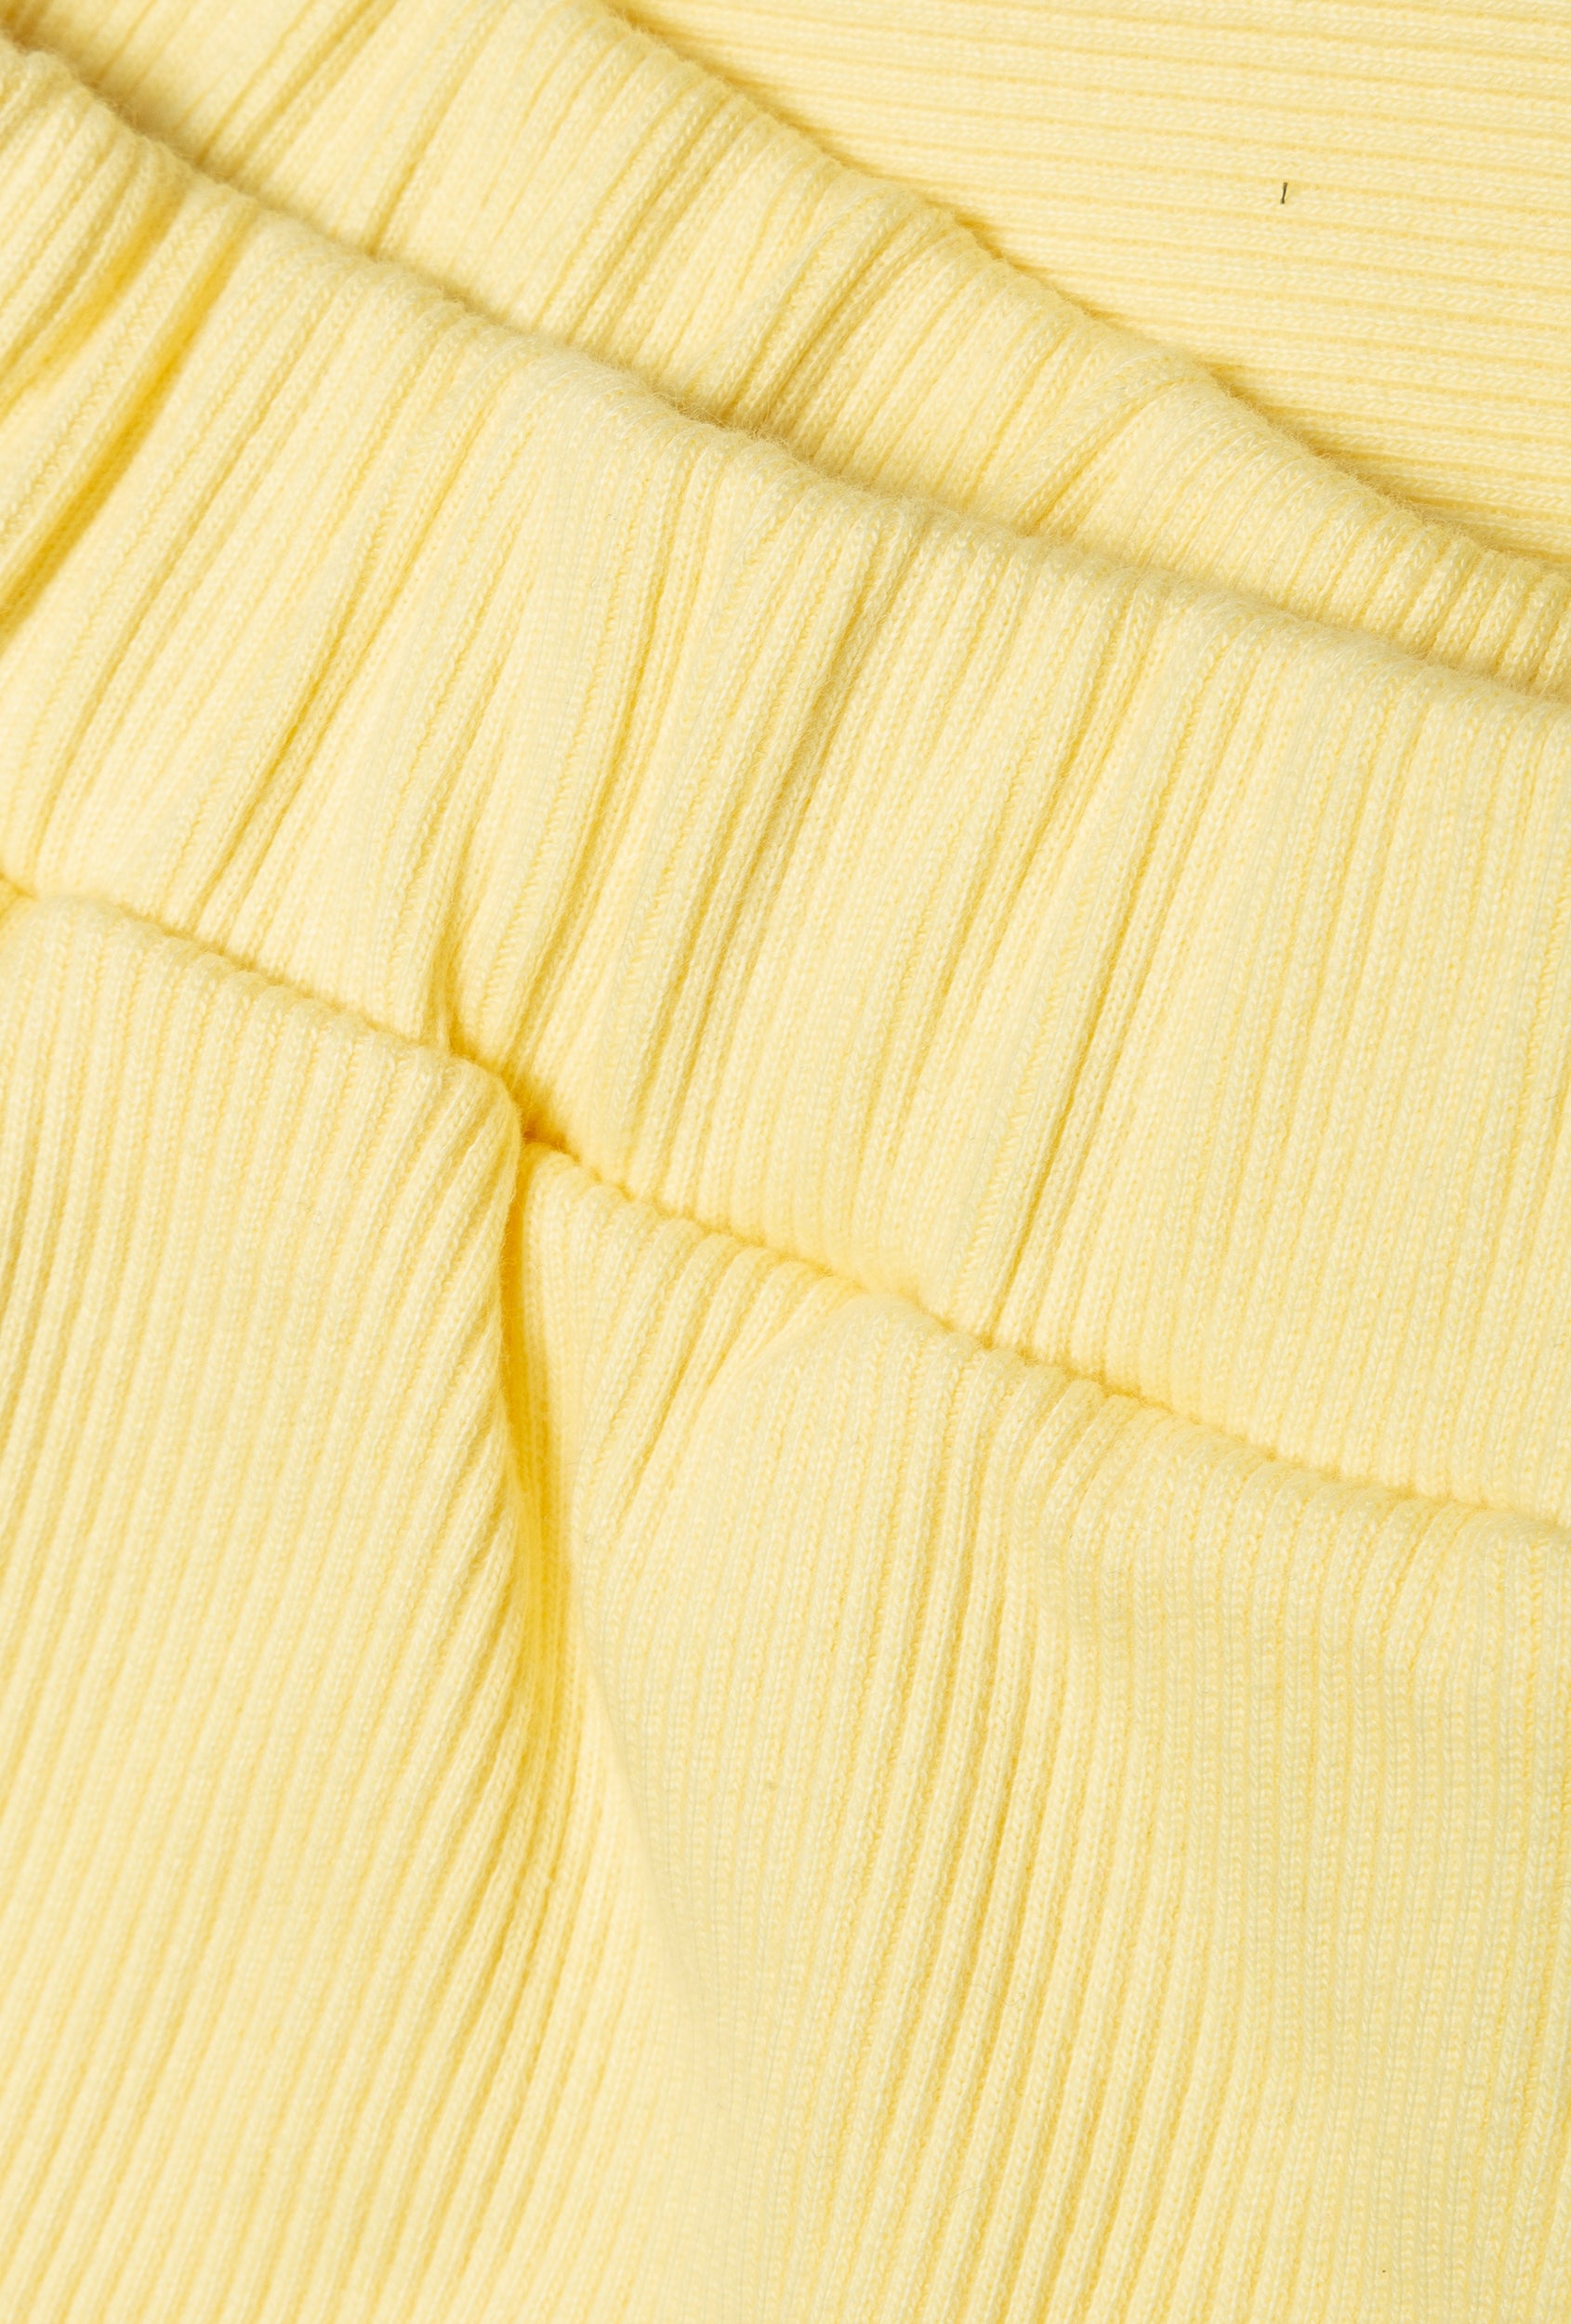 Venus skirt yellow